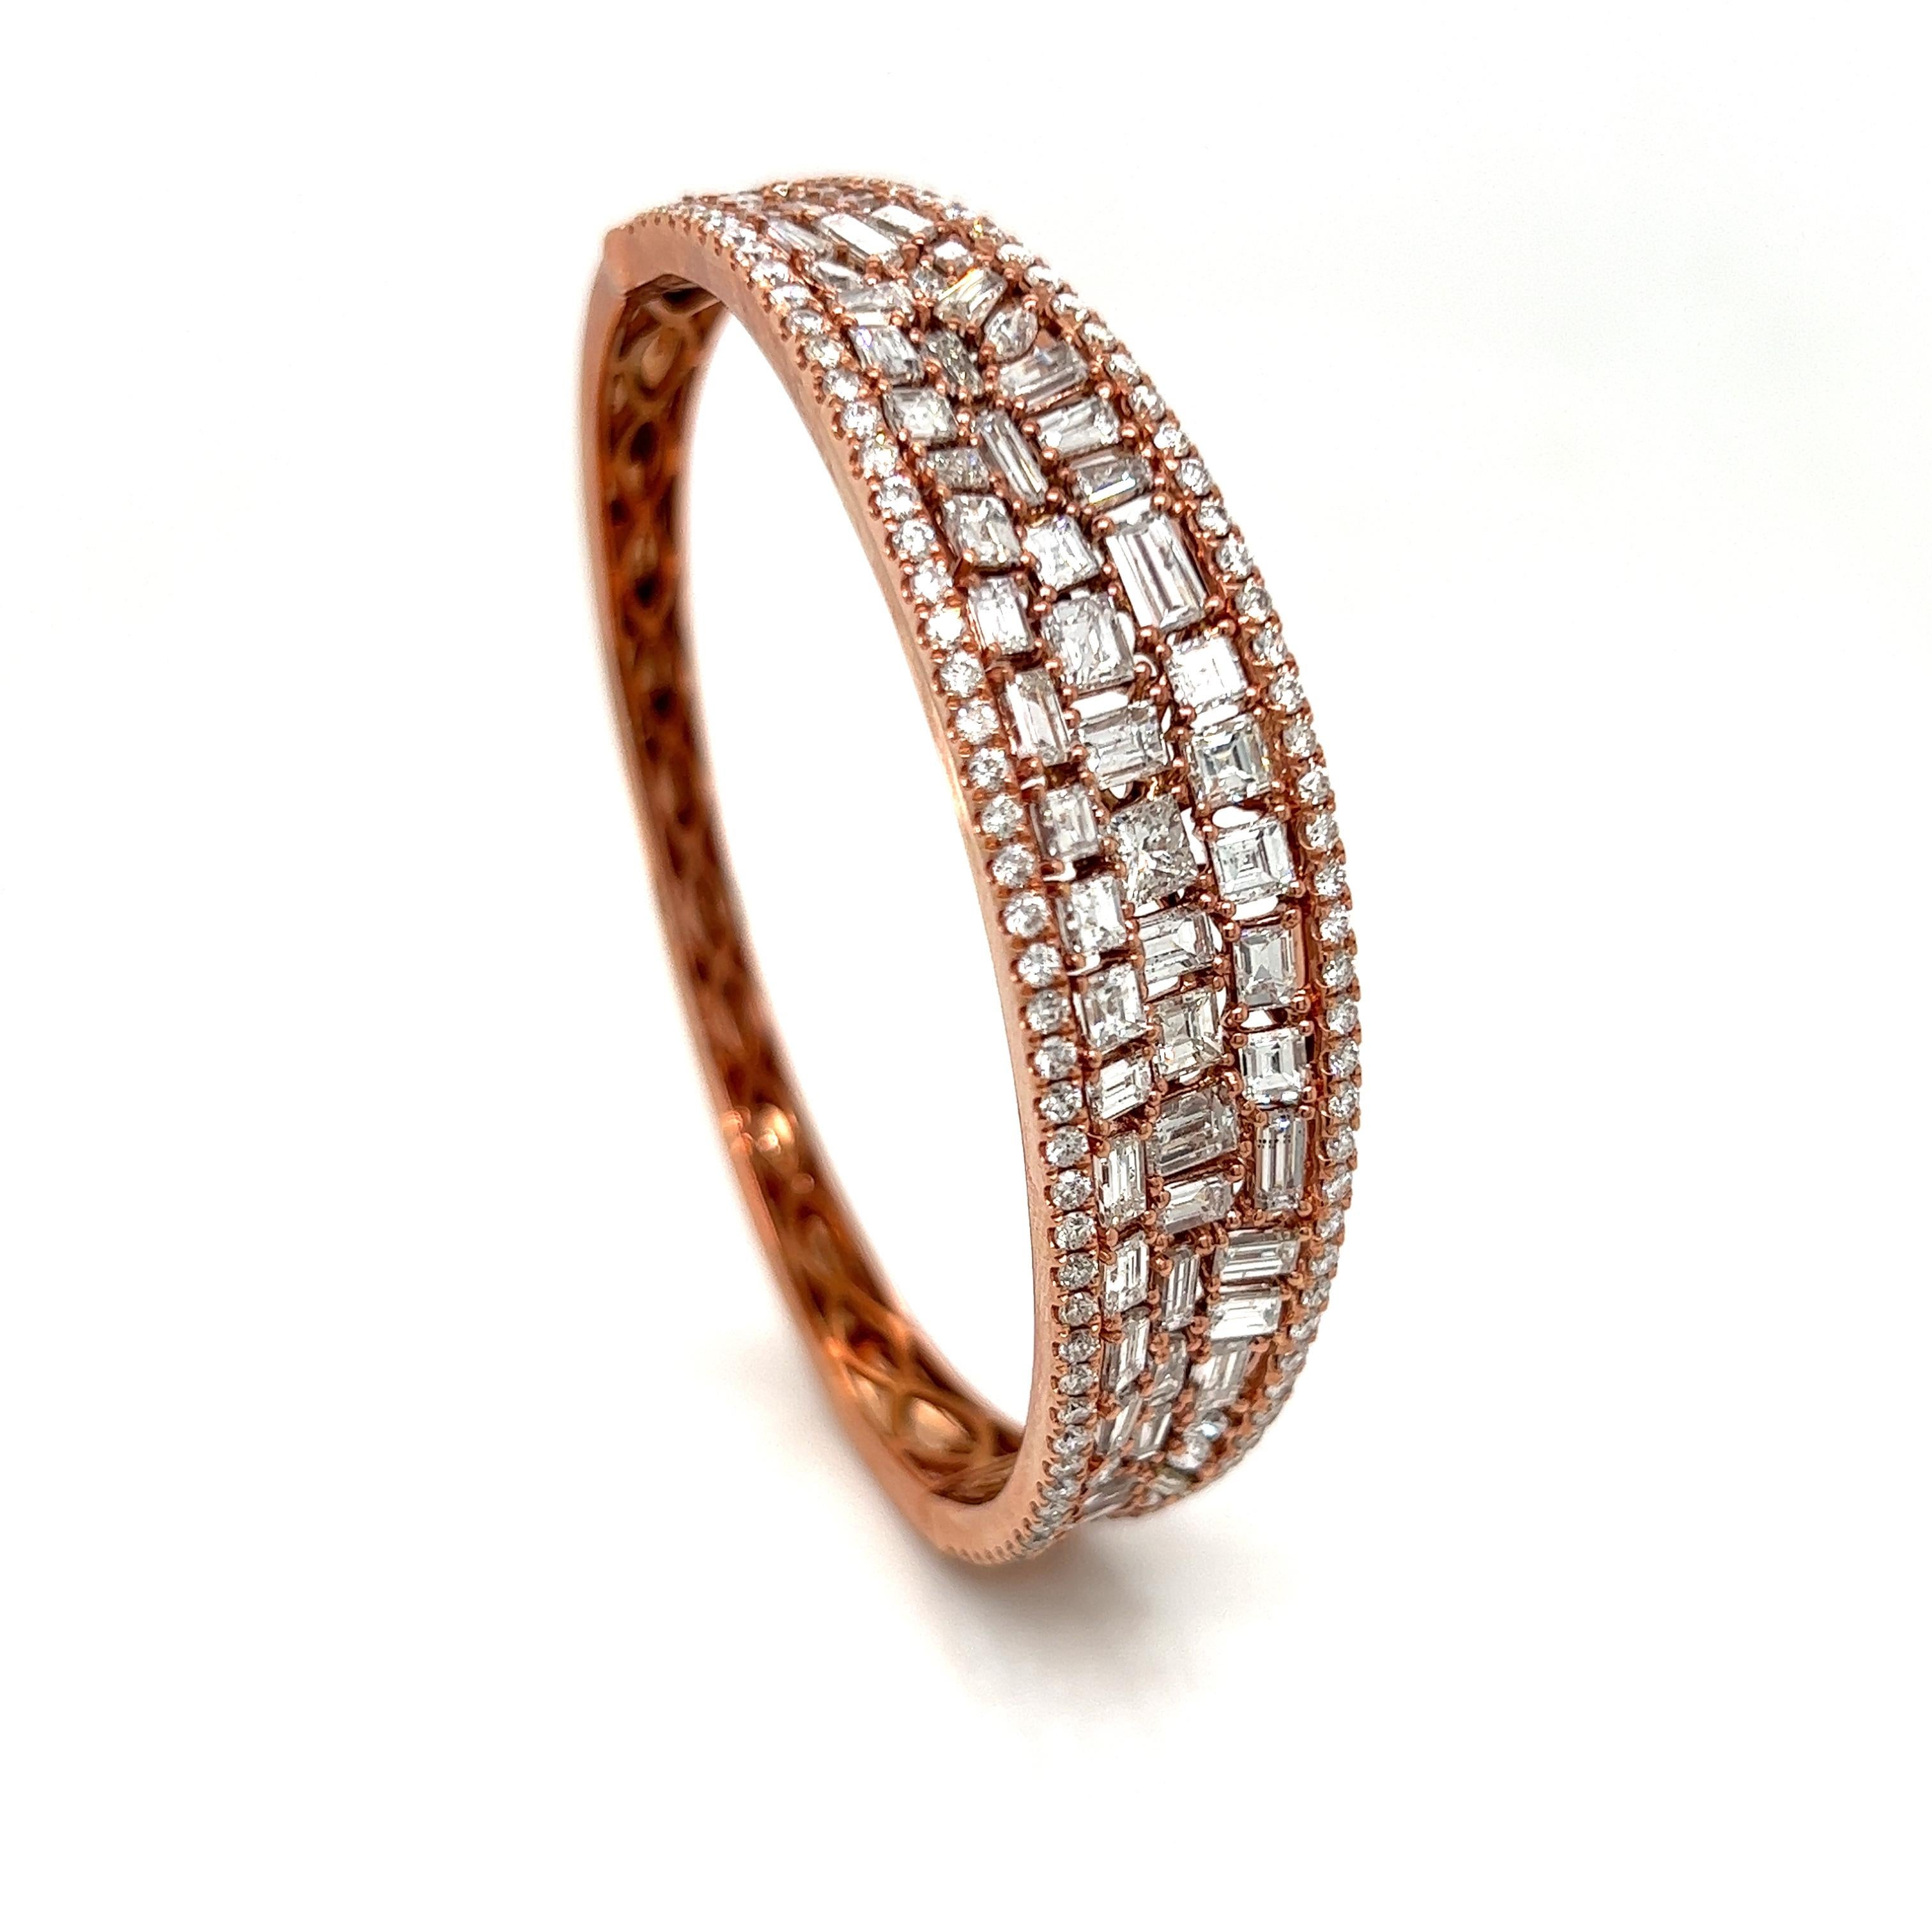 Bracelet exquis en diamants.  Des diamants de taille asscher, ronde, baguette et princesse sont habilement travaillés dans ce bracelet.  Un total de 9,20 cttw de diamants de pureté VS-SI et de couleur G-H en or rose 18K.  185 diamants font briller